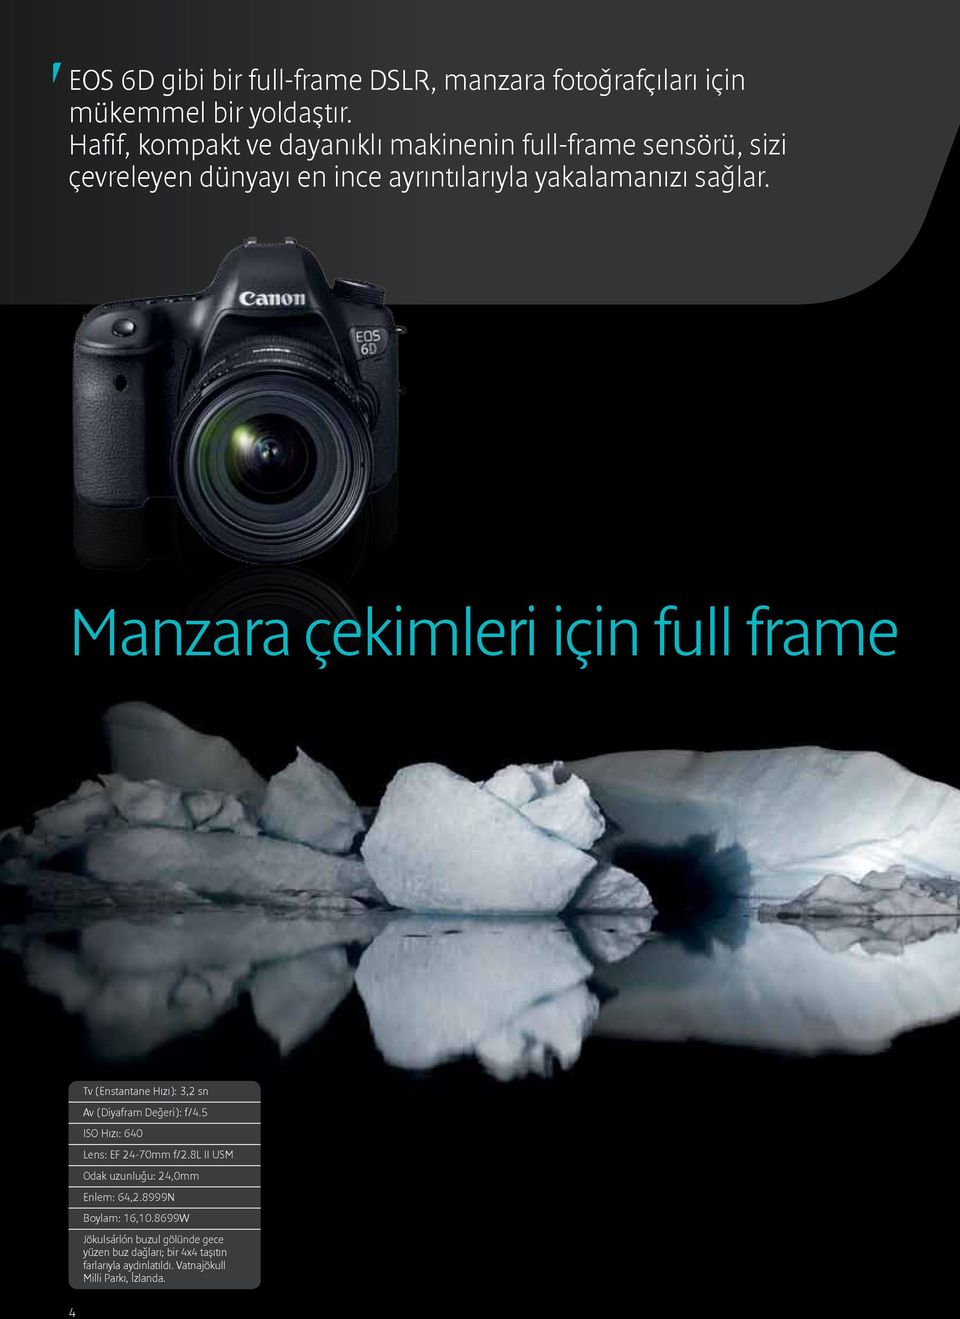 Manzara çekimleri için full frame Tv (Enstantane Hızı): 3,2 sn Av (Diyafram Değeri): f/4.5 ISO Hızı: 640 Lens: EF 24-70mm f/2.